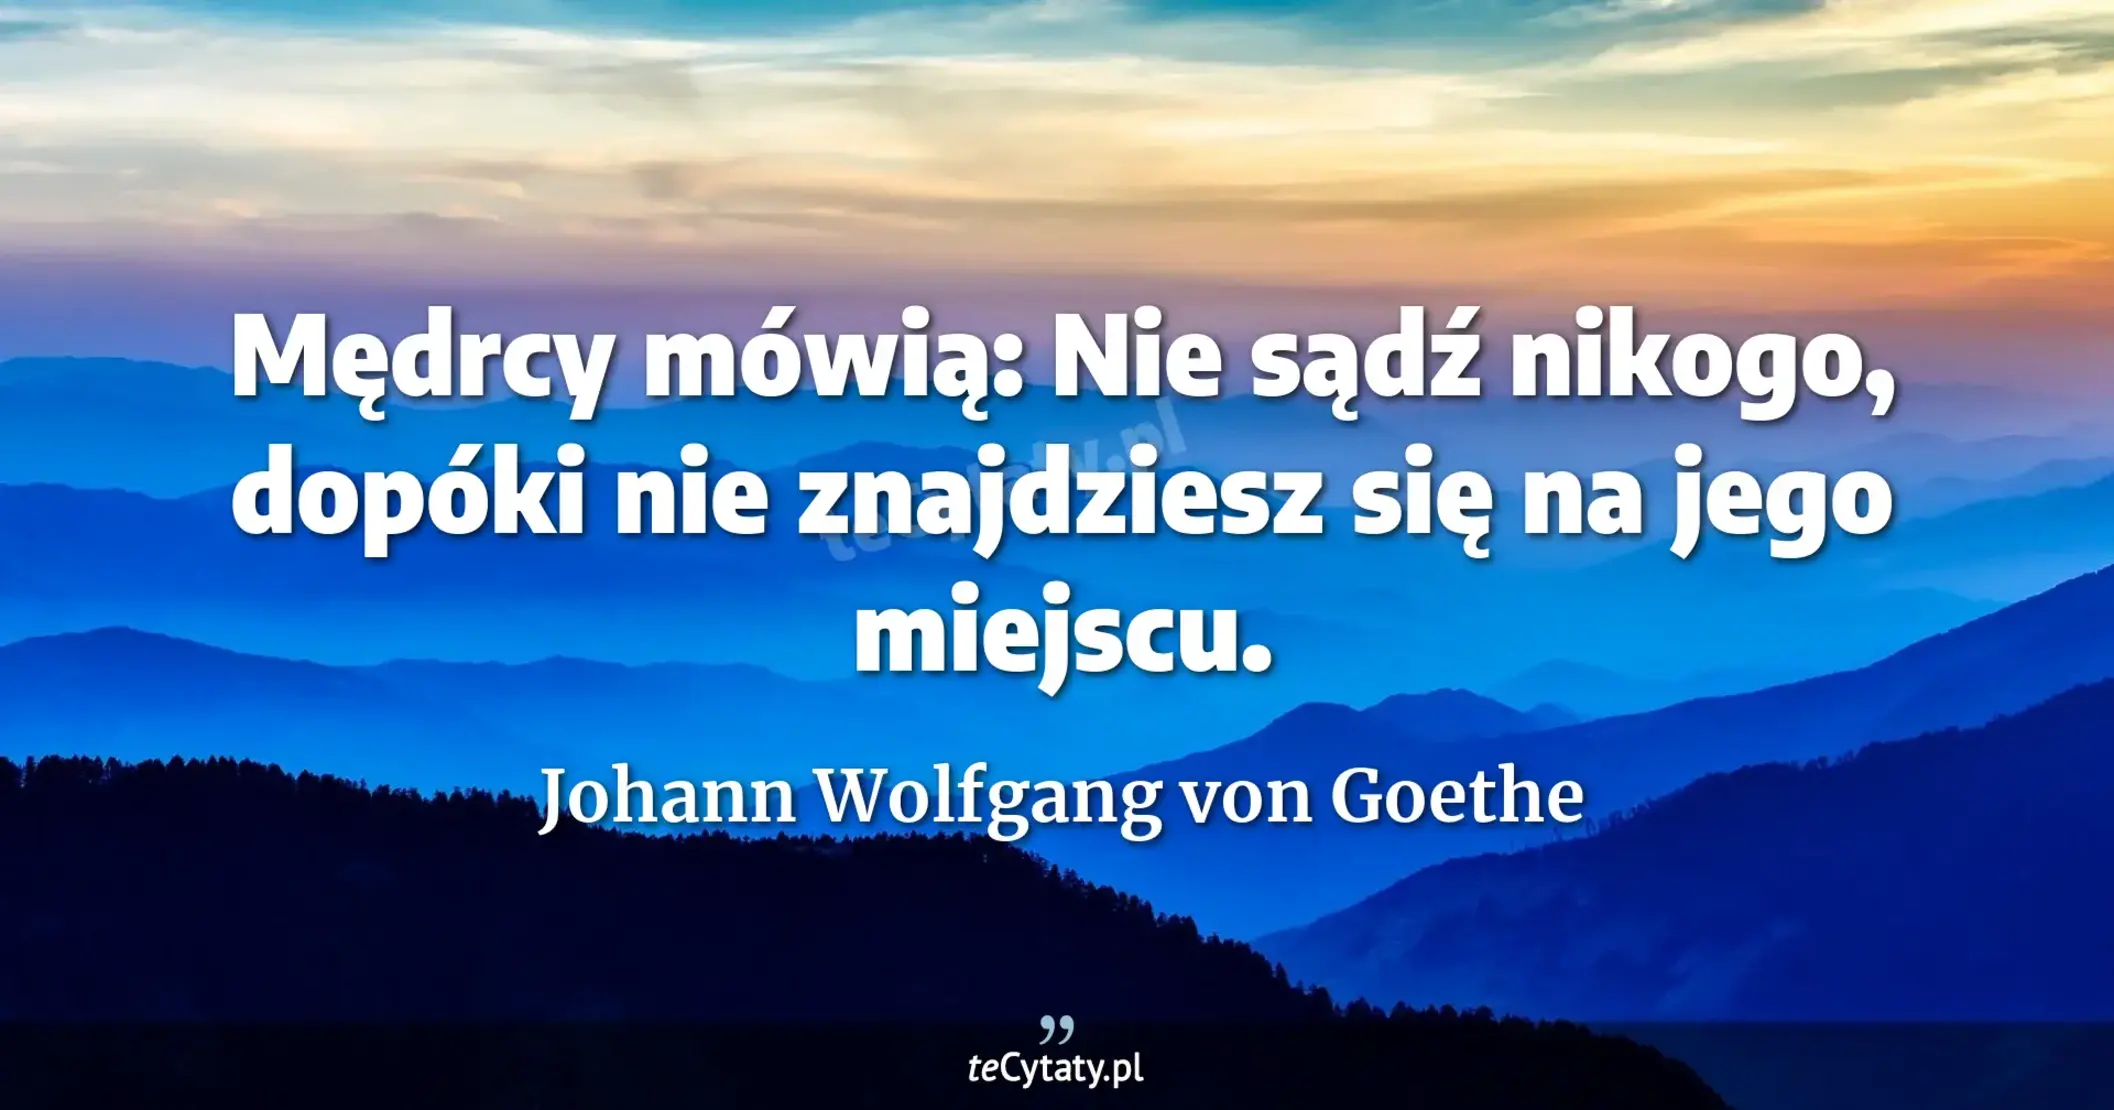 Mędrcy mówią: Nie sądź nikogo, dopóki nie znajdziesz się na jego miejscu. - Johann Wolfgang von Goethe